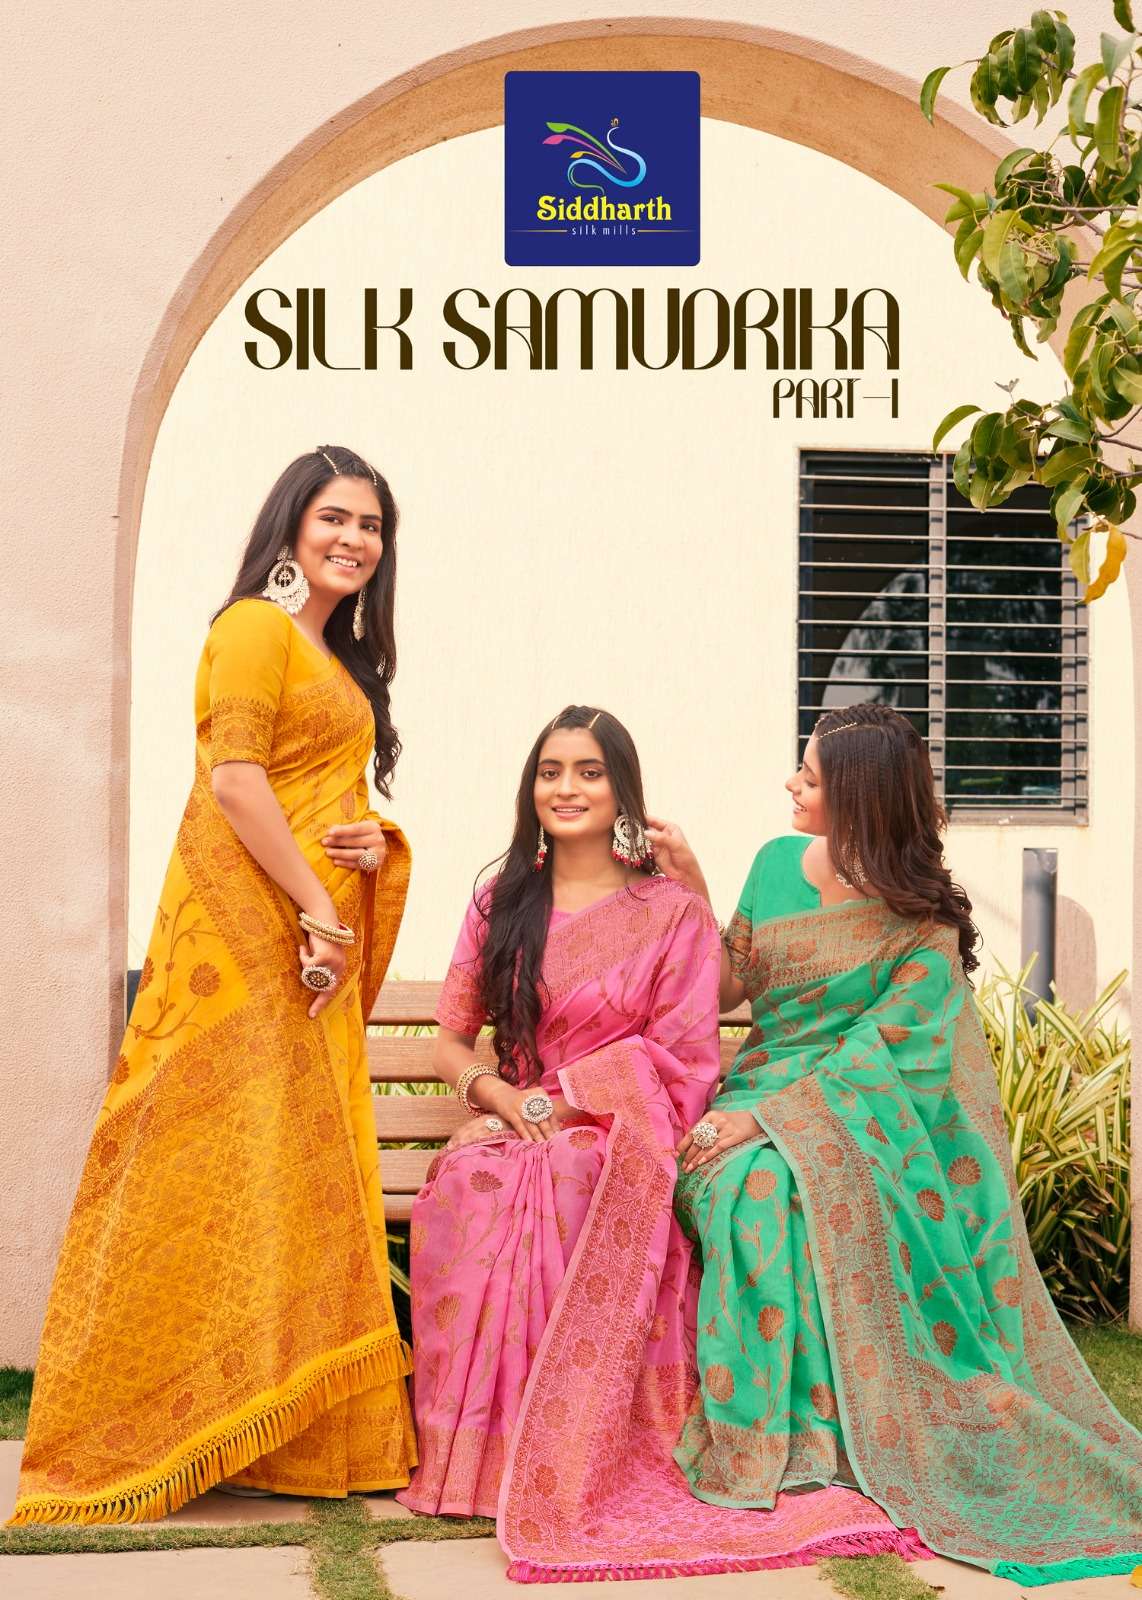 siddharth silk samudrika beautiful south indian sarees 